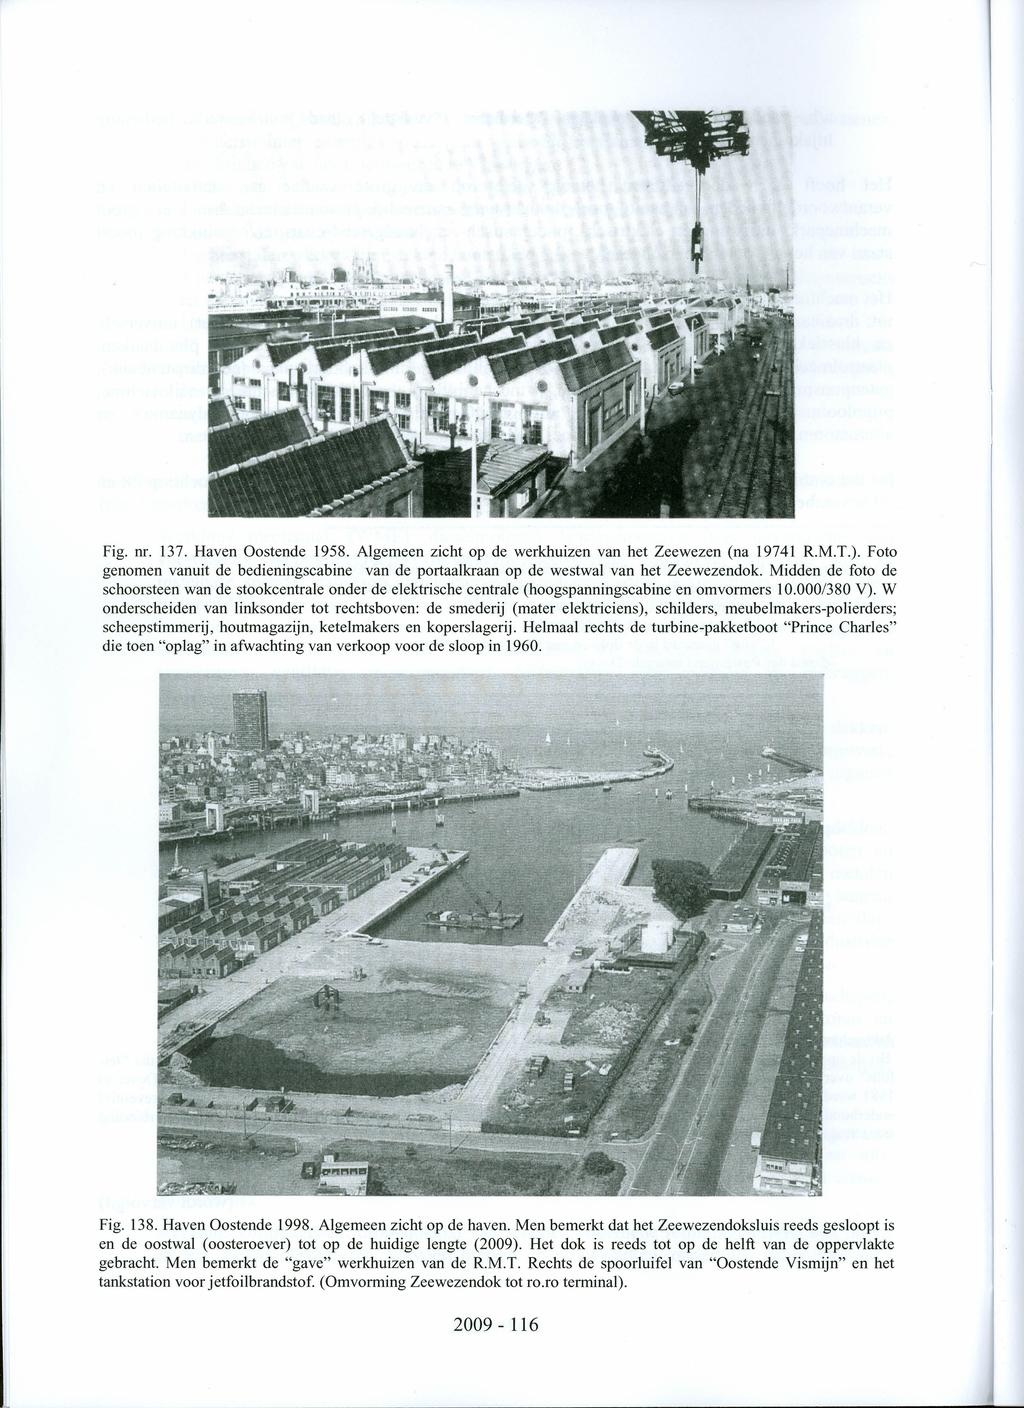 Fig. nr. 137. Haven Oostende 1958. Algemeen zicht op de werkhuizen van het Zeewezen (na 19741 R.M.T.). Foto genomen vanuit de bedieningscabine van de portaalkraan op de westwal van het Zeewezendok.